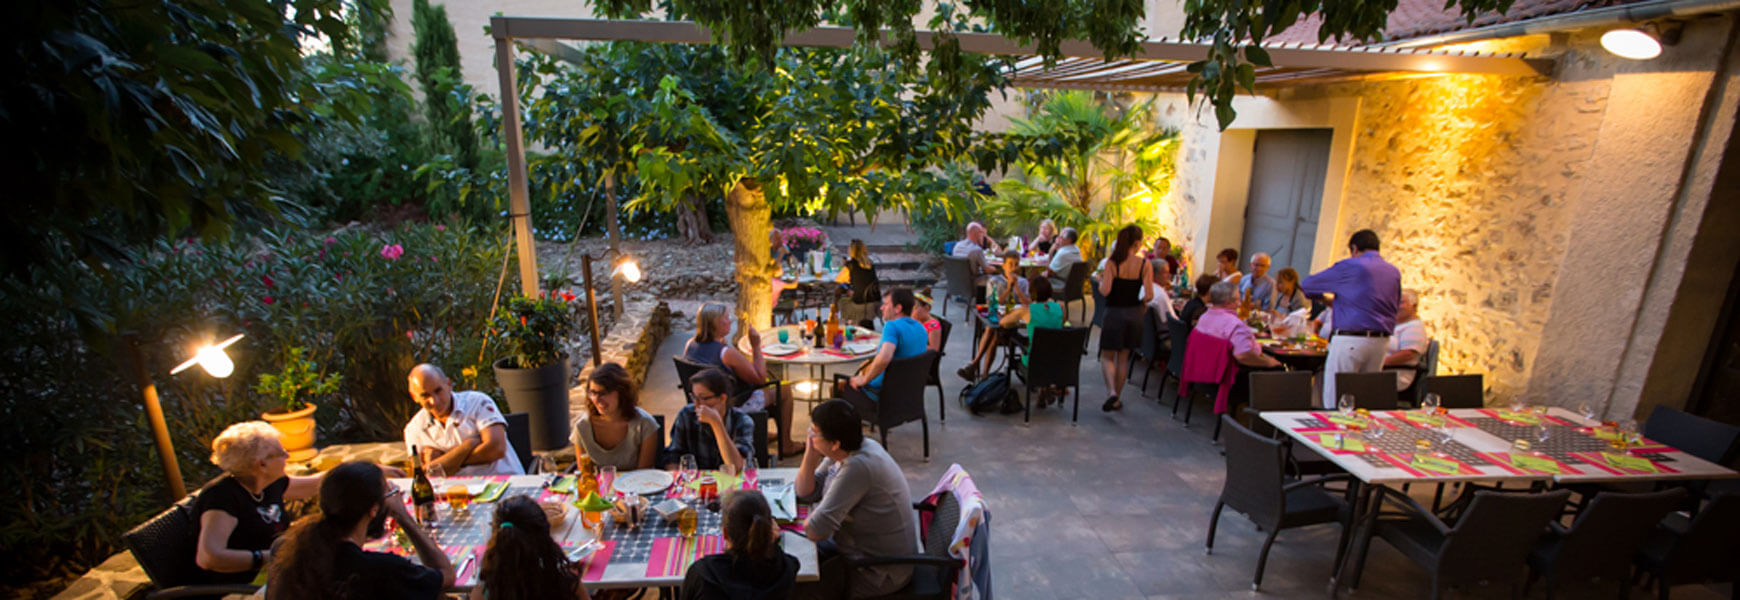 Restaurant près de Béziers la Table Vigneronne de l'Abbaye Sylva Plana